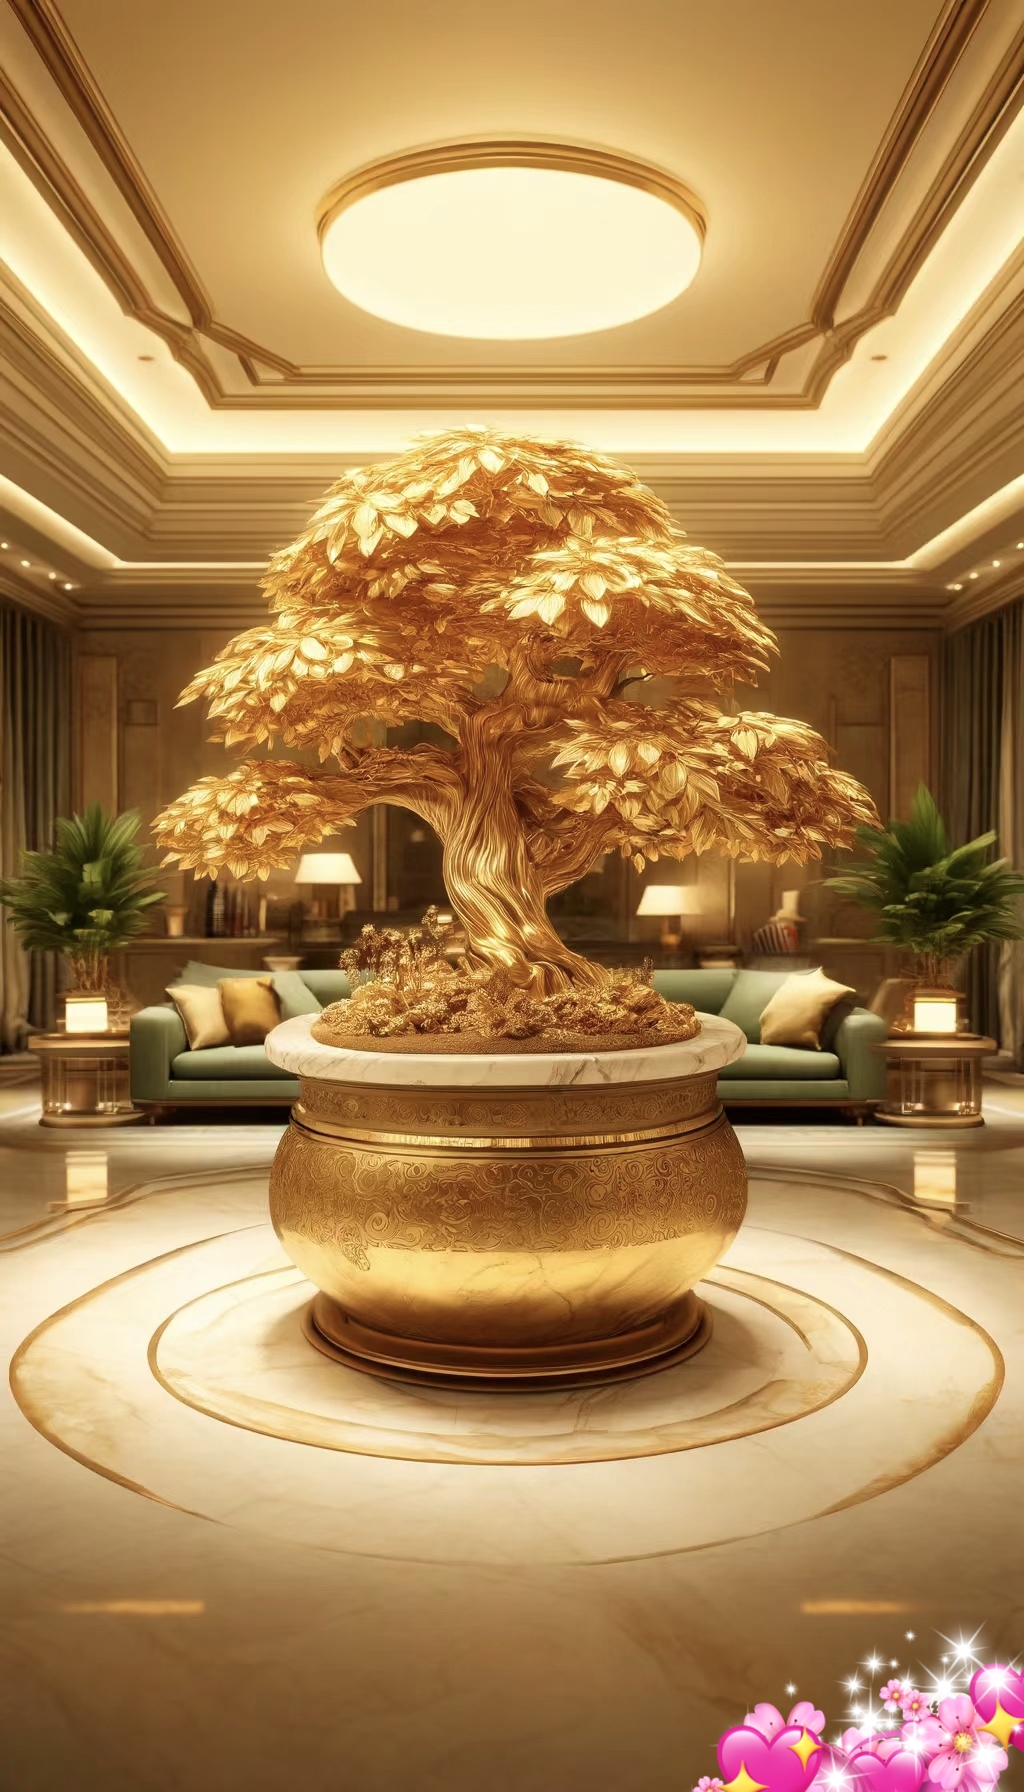 发财树 奢华金色盆栽树,好运财富的象征!